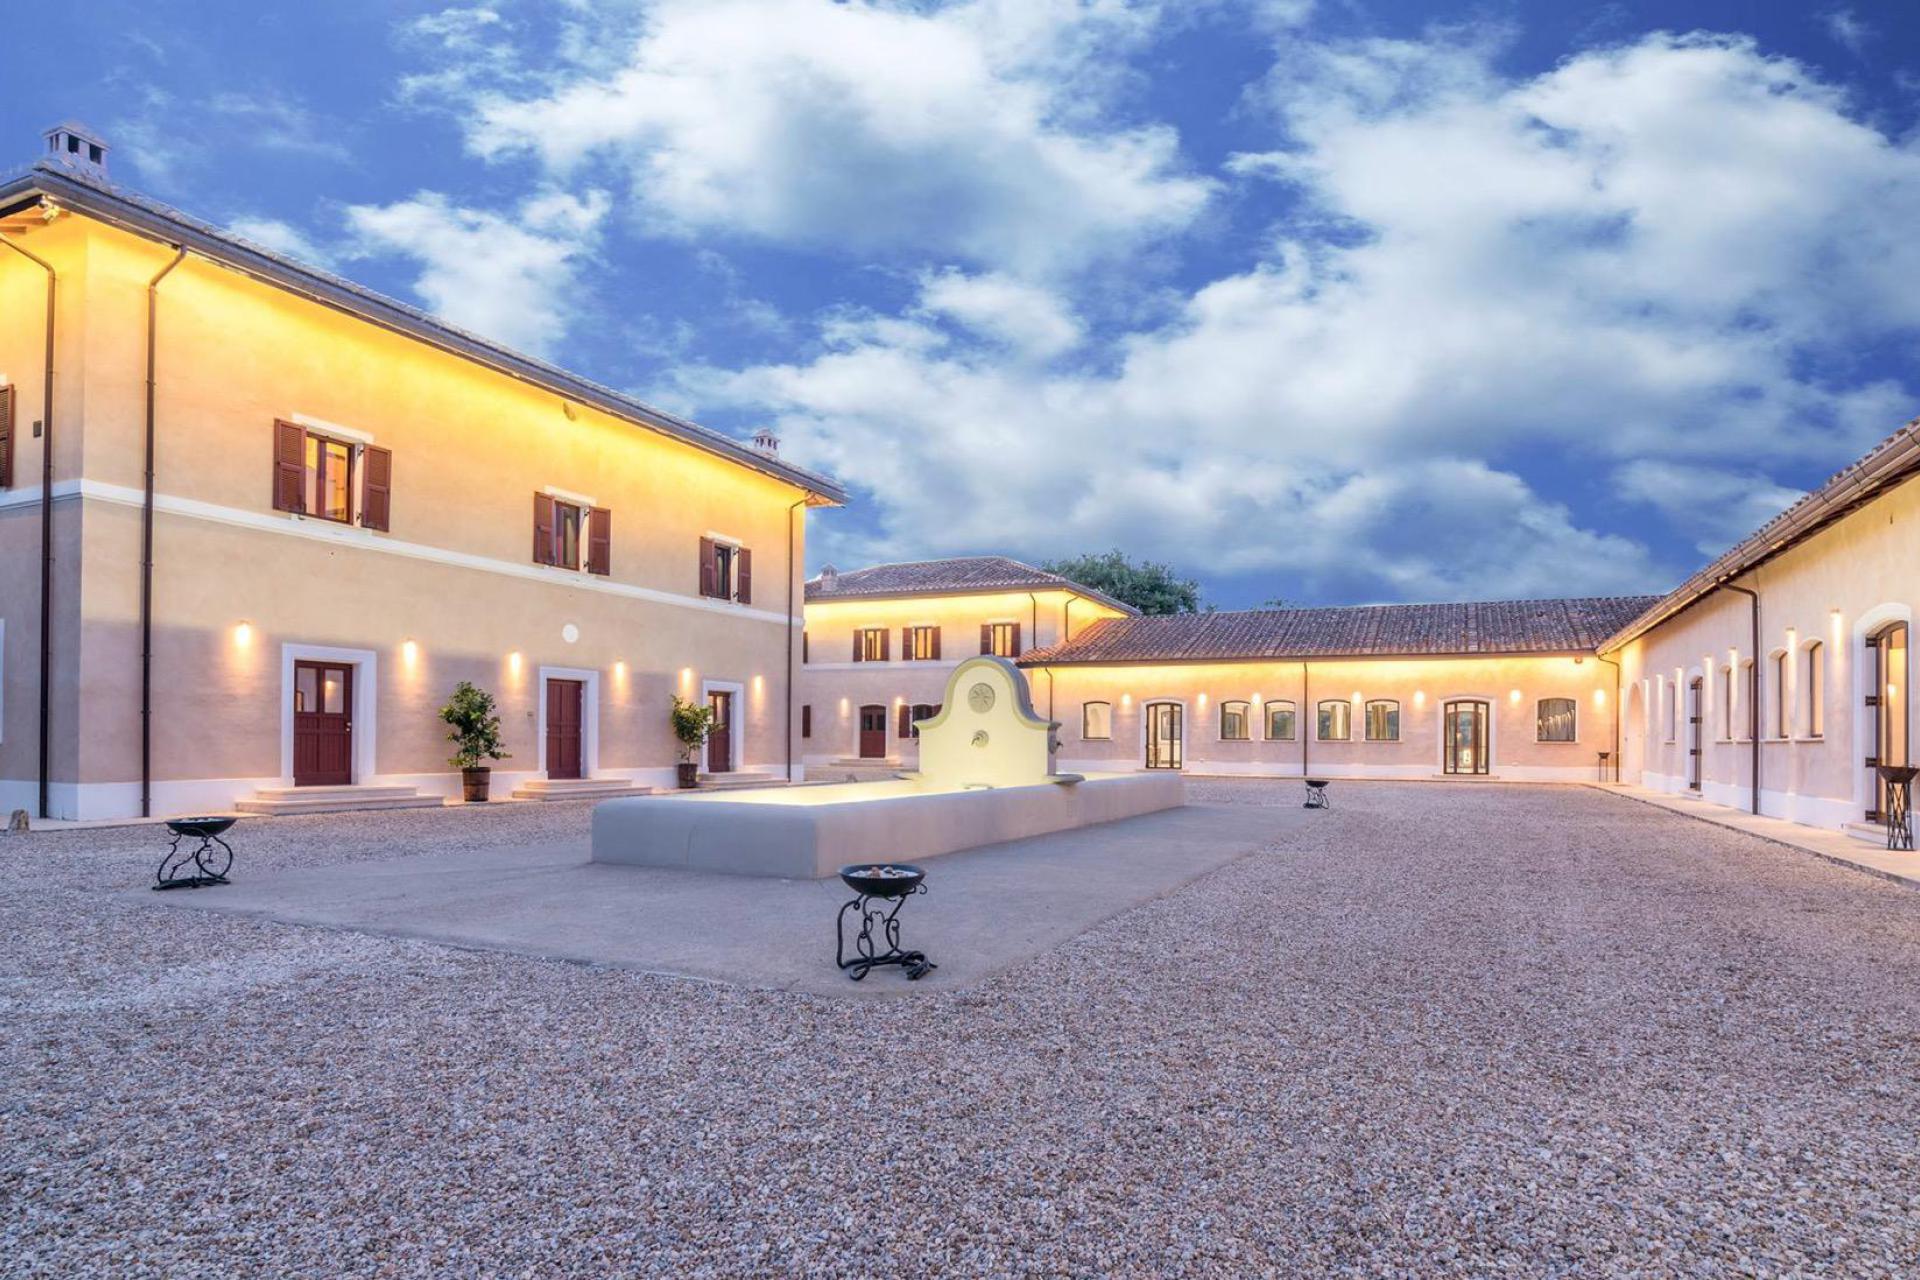 Luxus-Agriturismon nähe Rom mit Restaurant und Pool